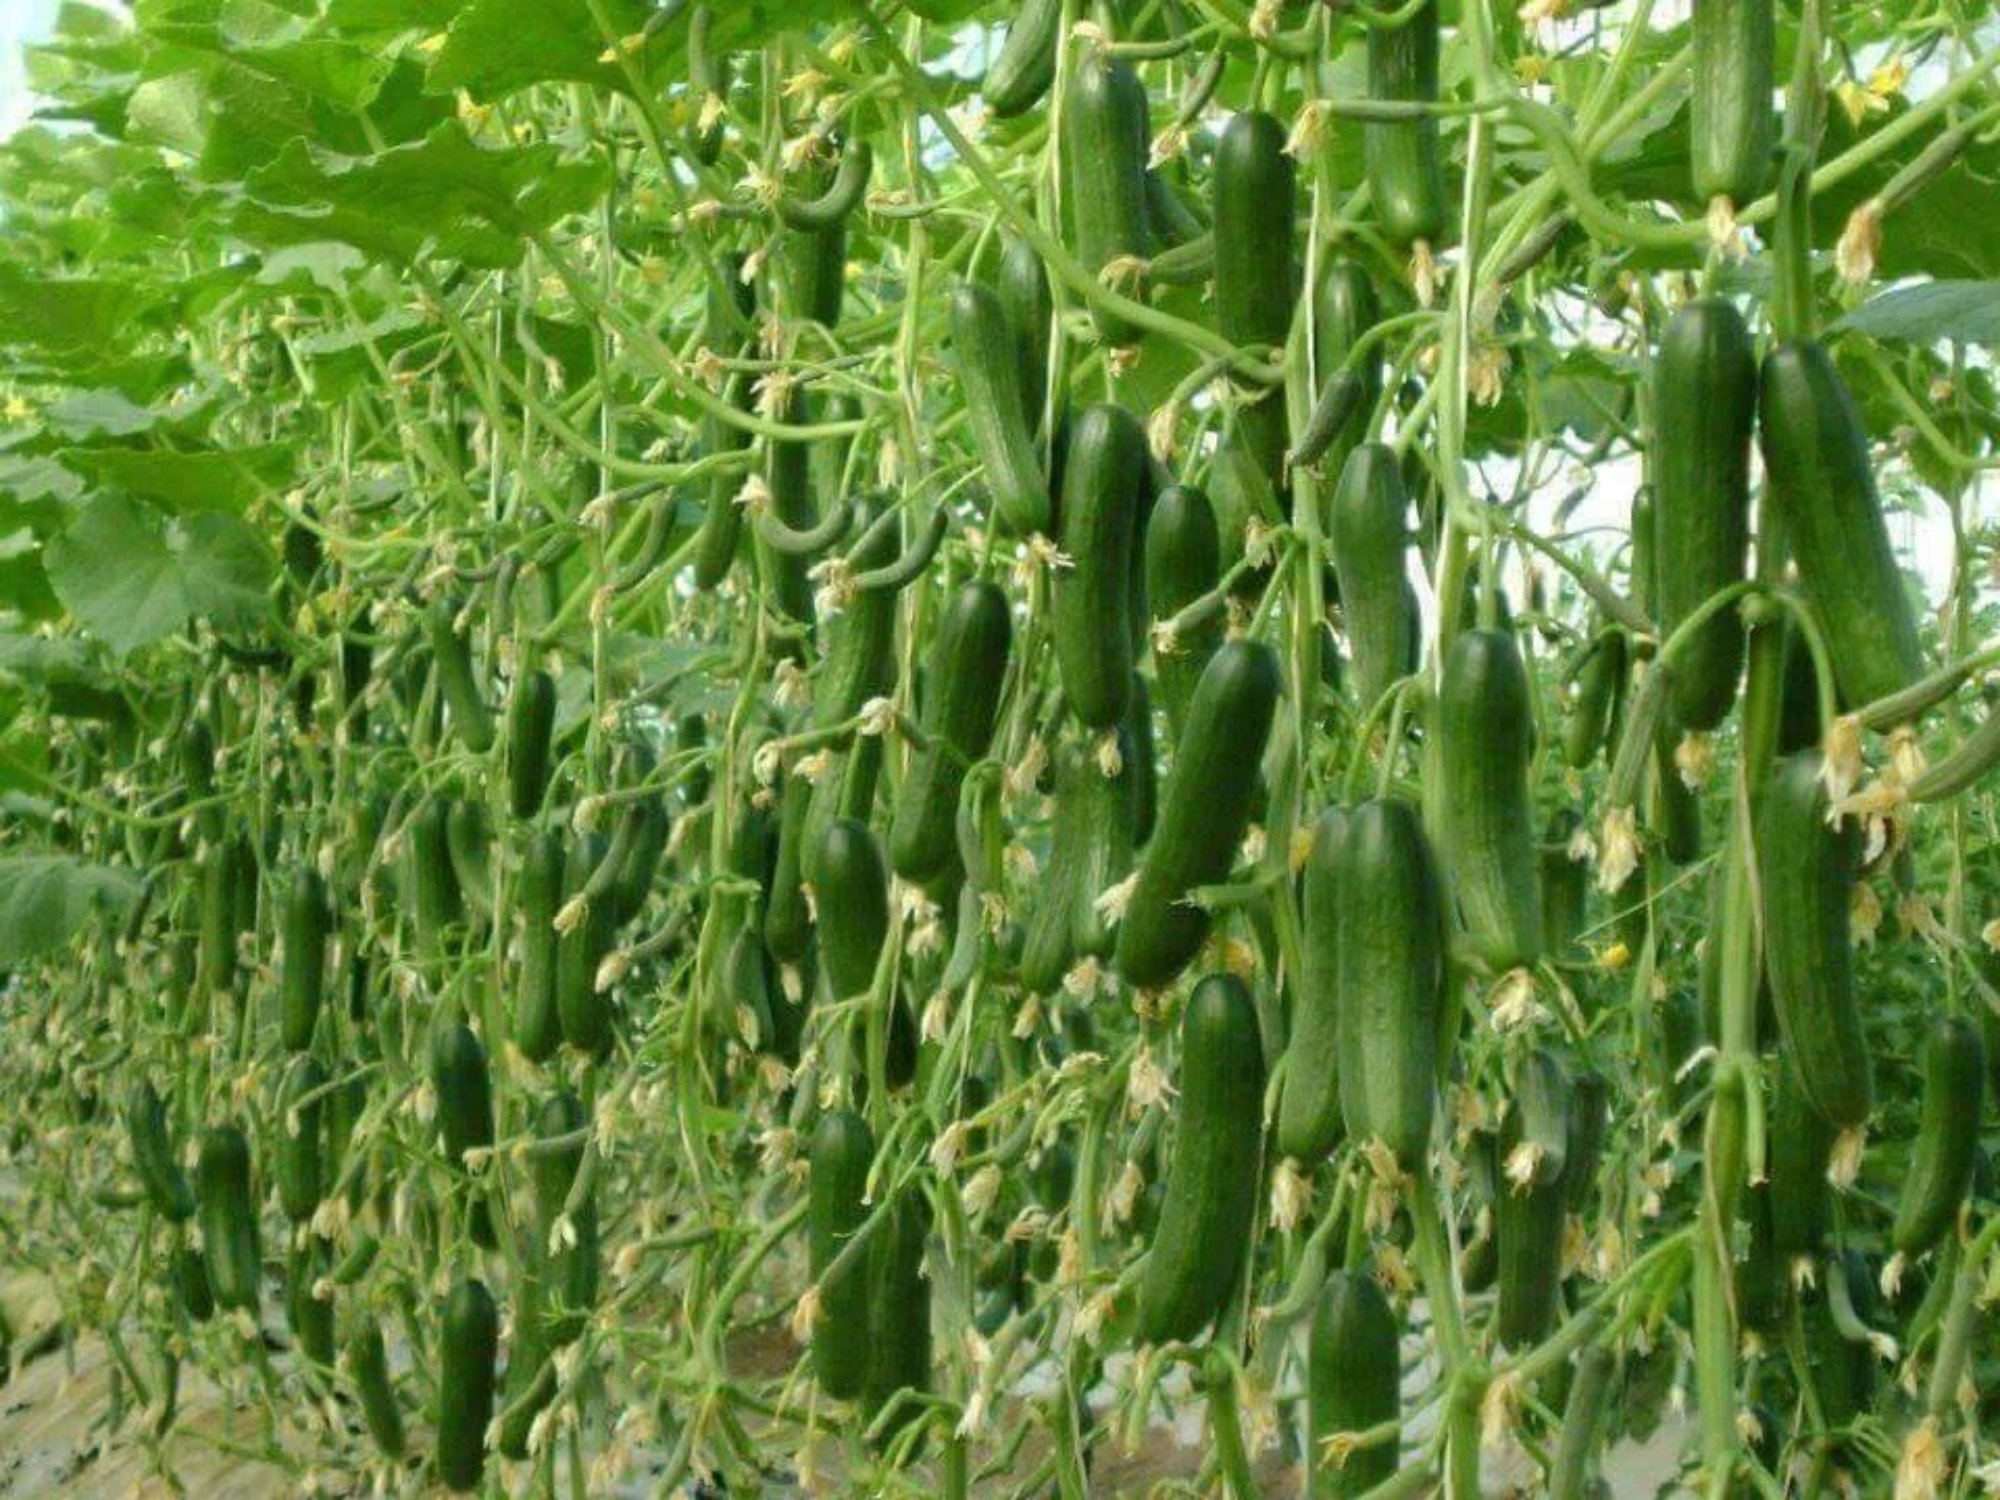 Mô hình trồng cây ăn quả kết hợp chăn nuôi cho hiệu quả kinh tế cao   baoninhbinhorgvn